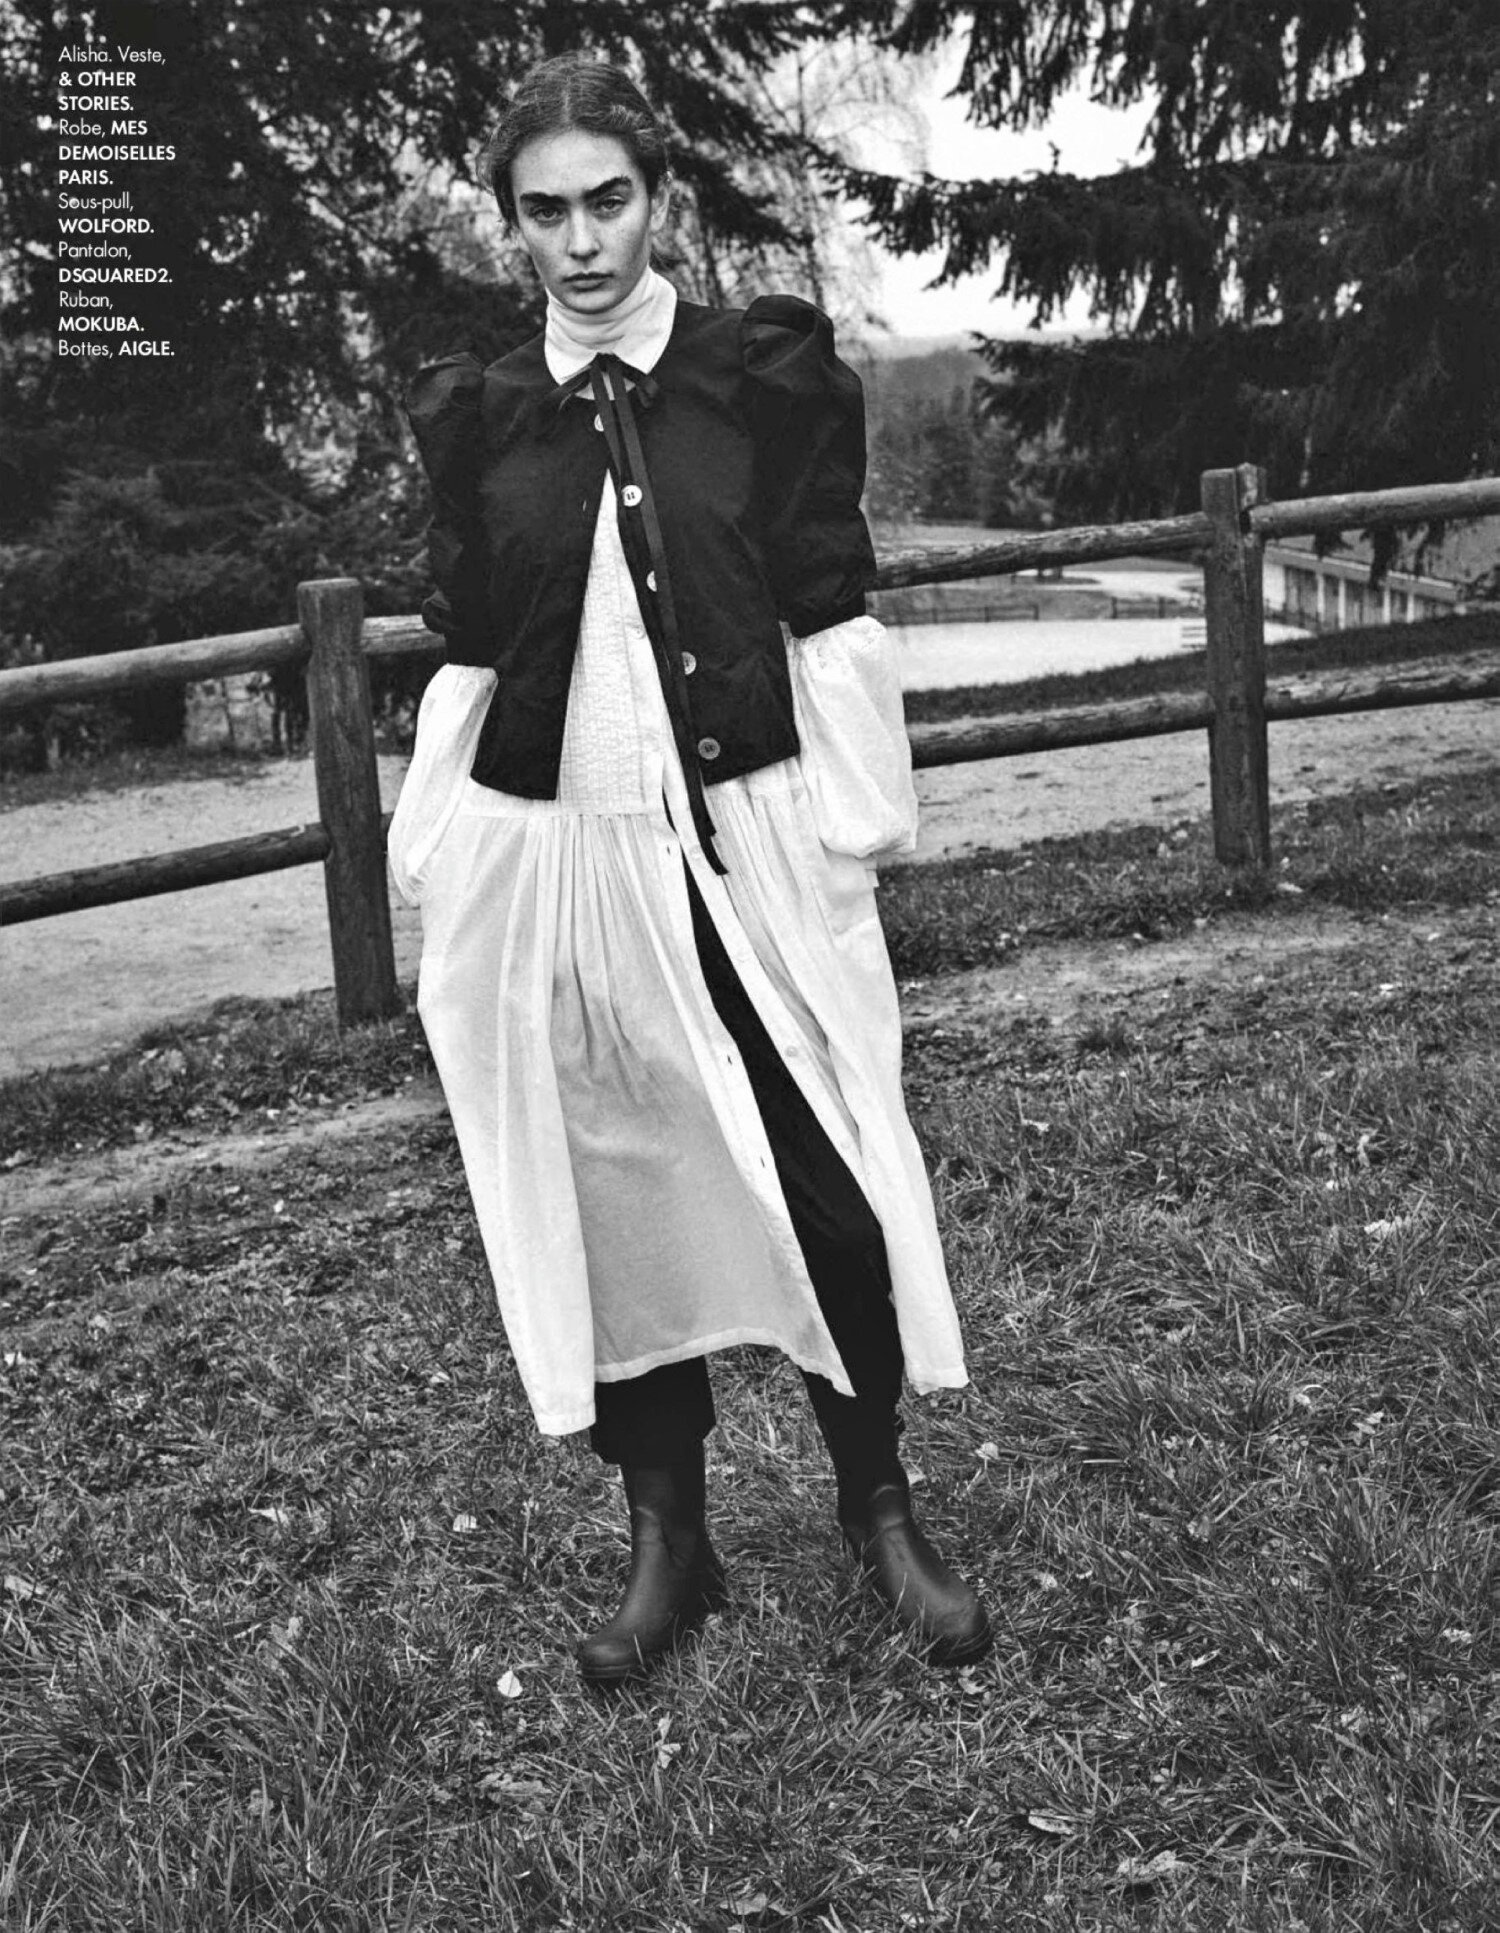 1-Johan Sandberg 'Belle Amish' for ELLE France May 7 (6).jpg